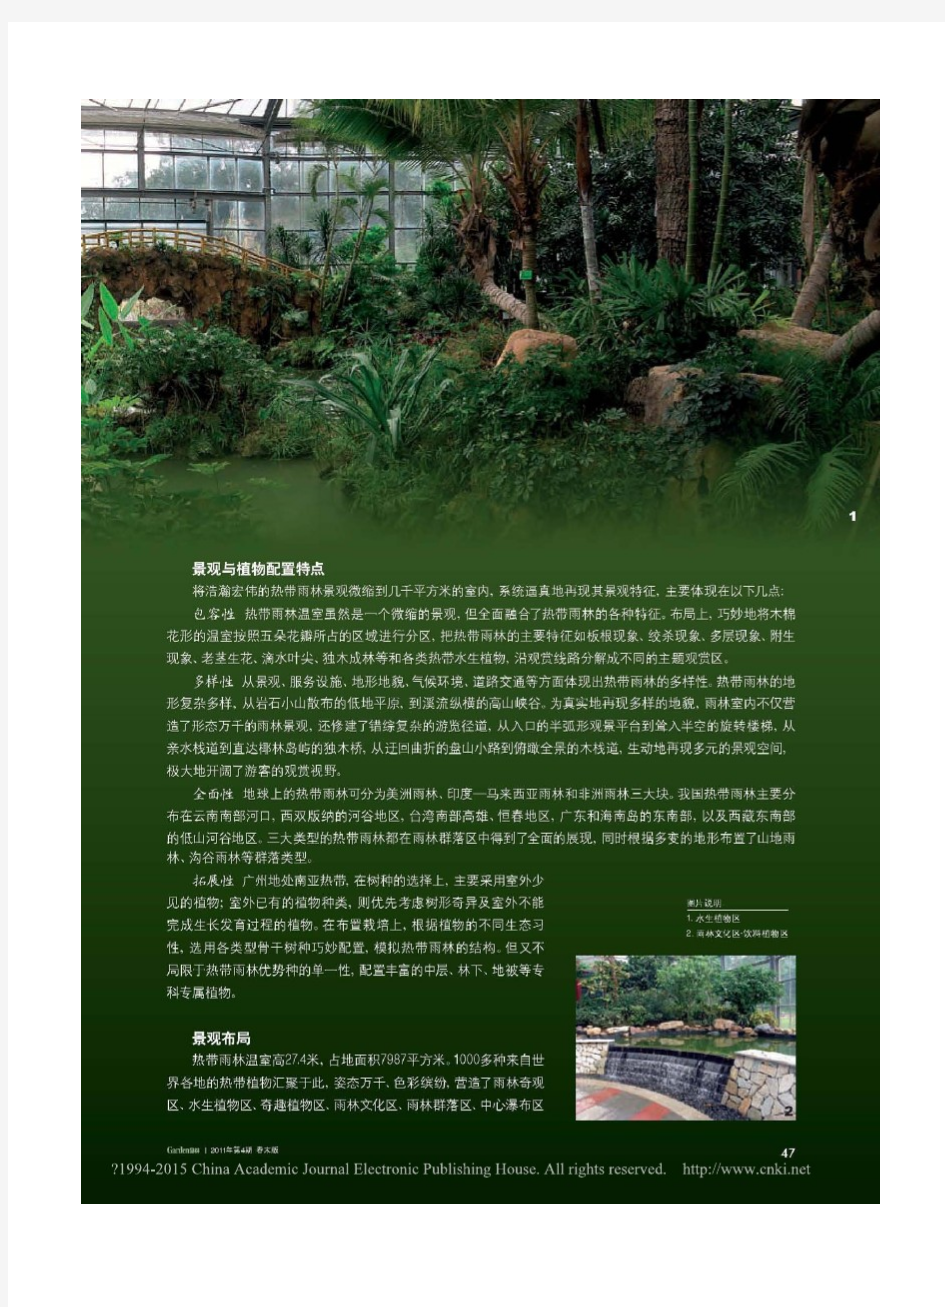 热带雨林之旅_上_华南植物园热带雨林温室景观规划及植物配置